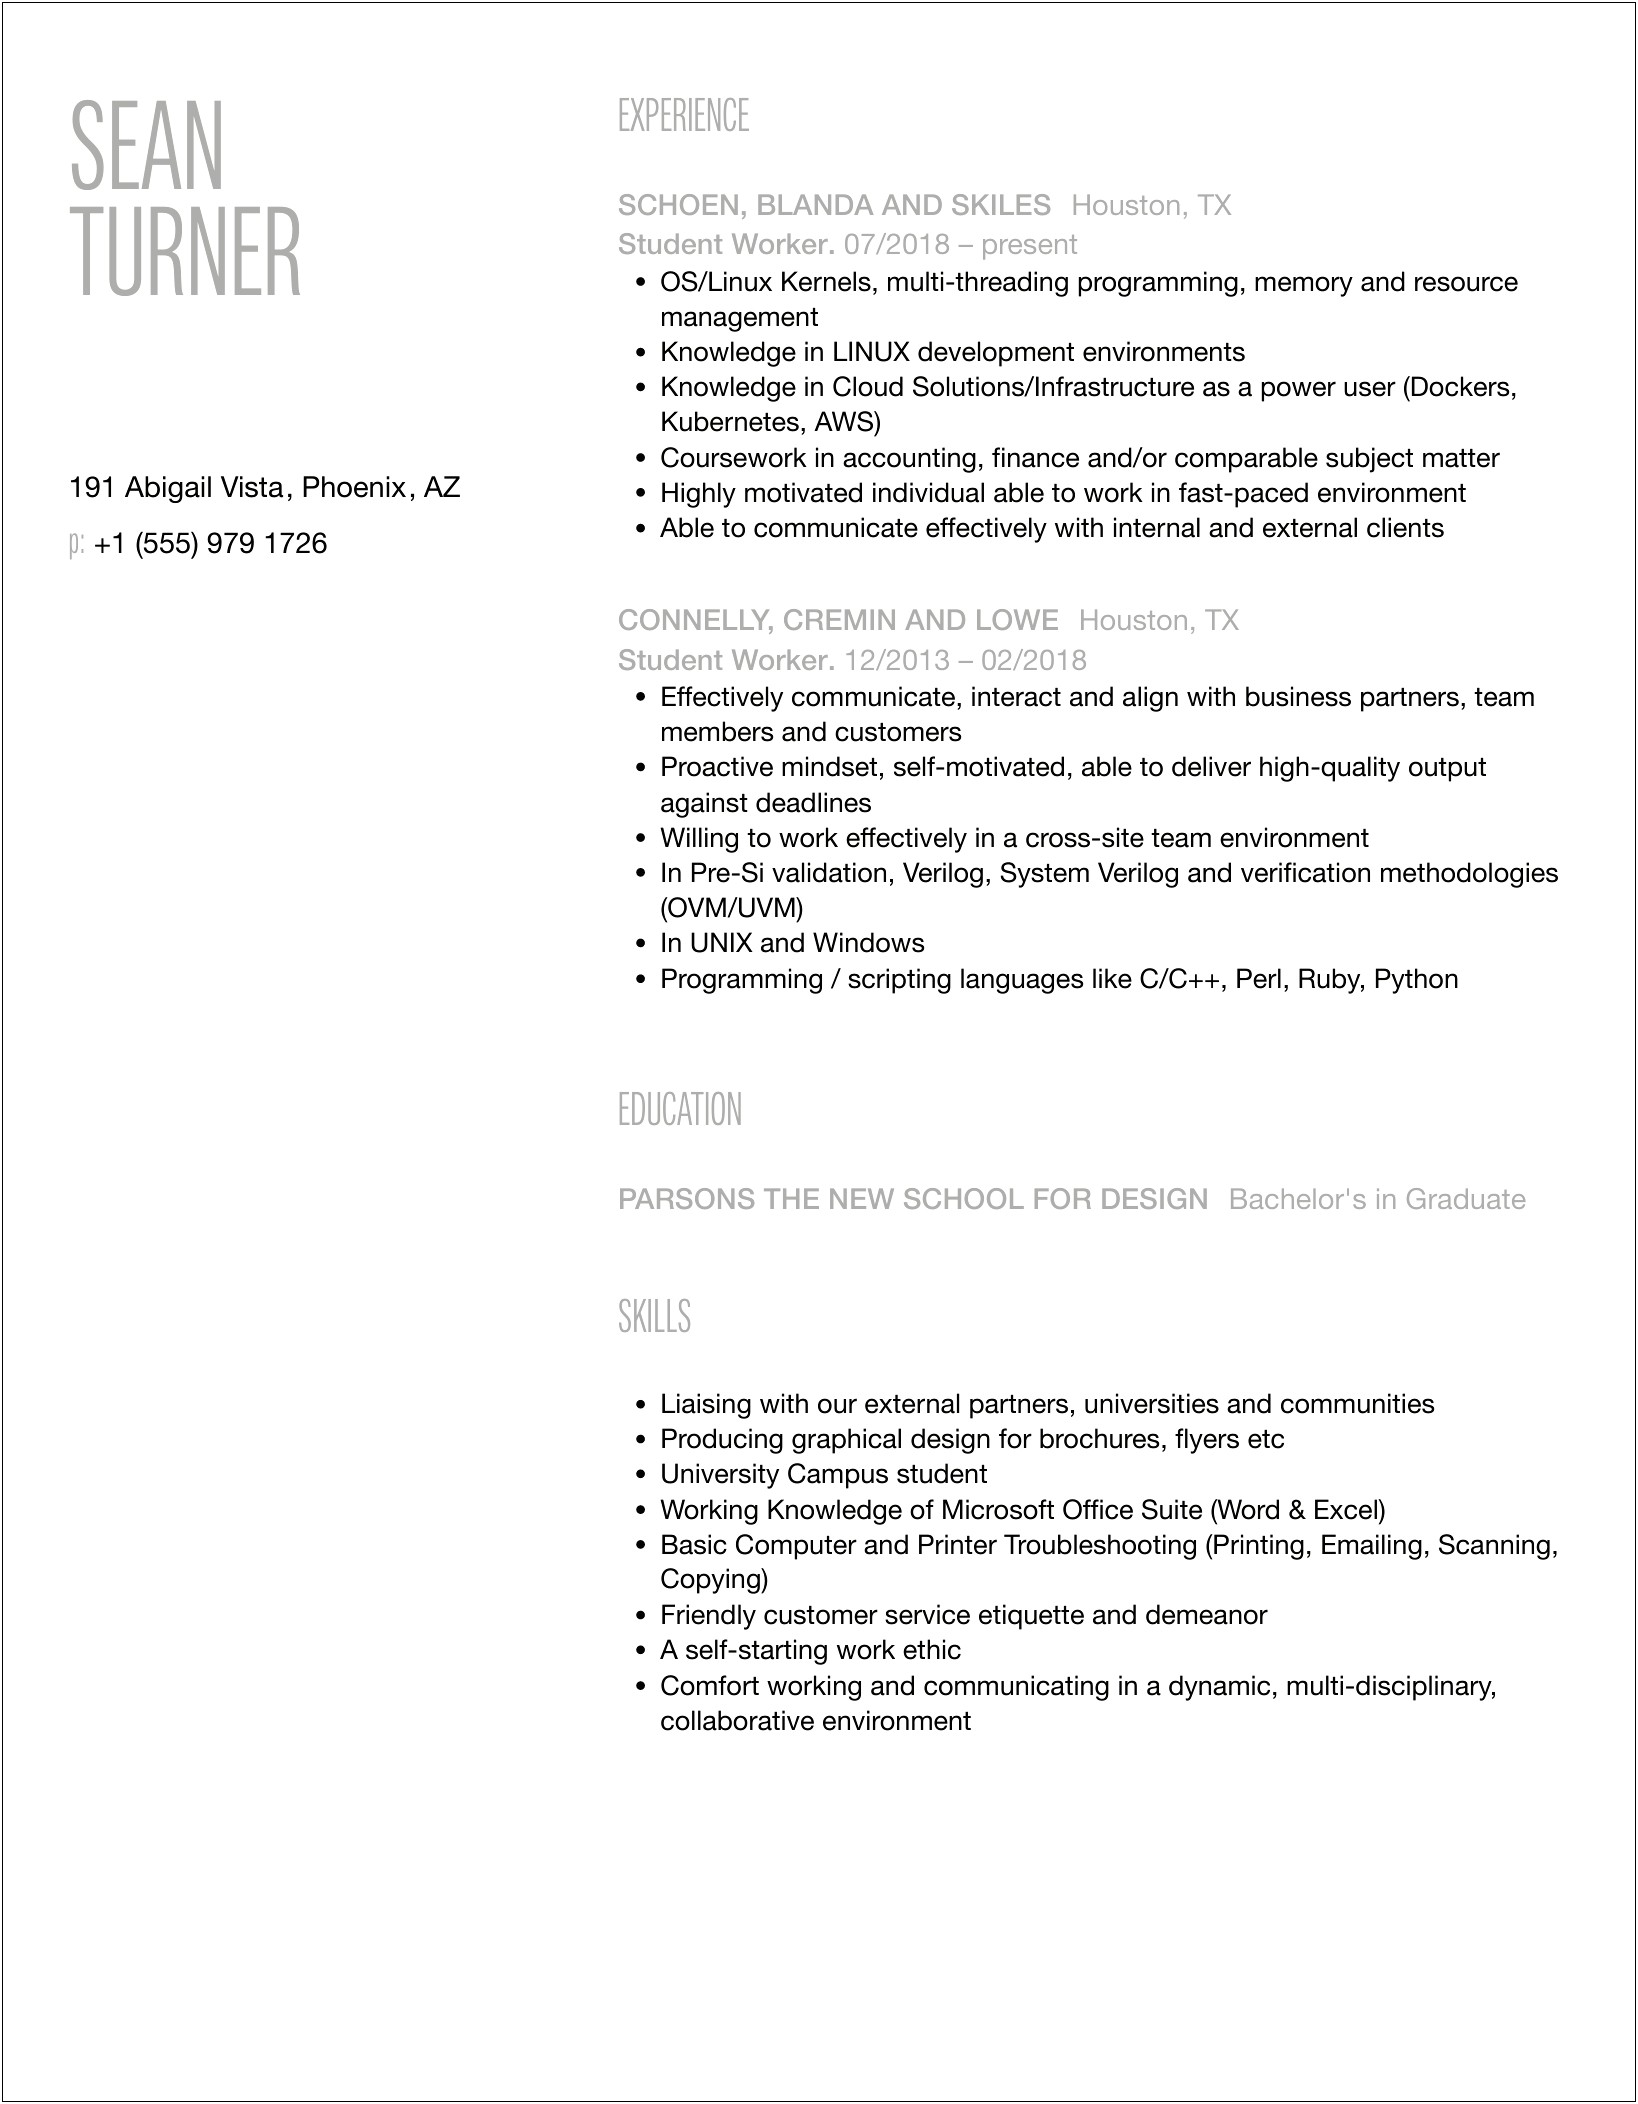 Student Worker Job Description For Resume